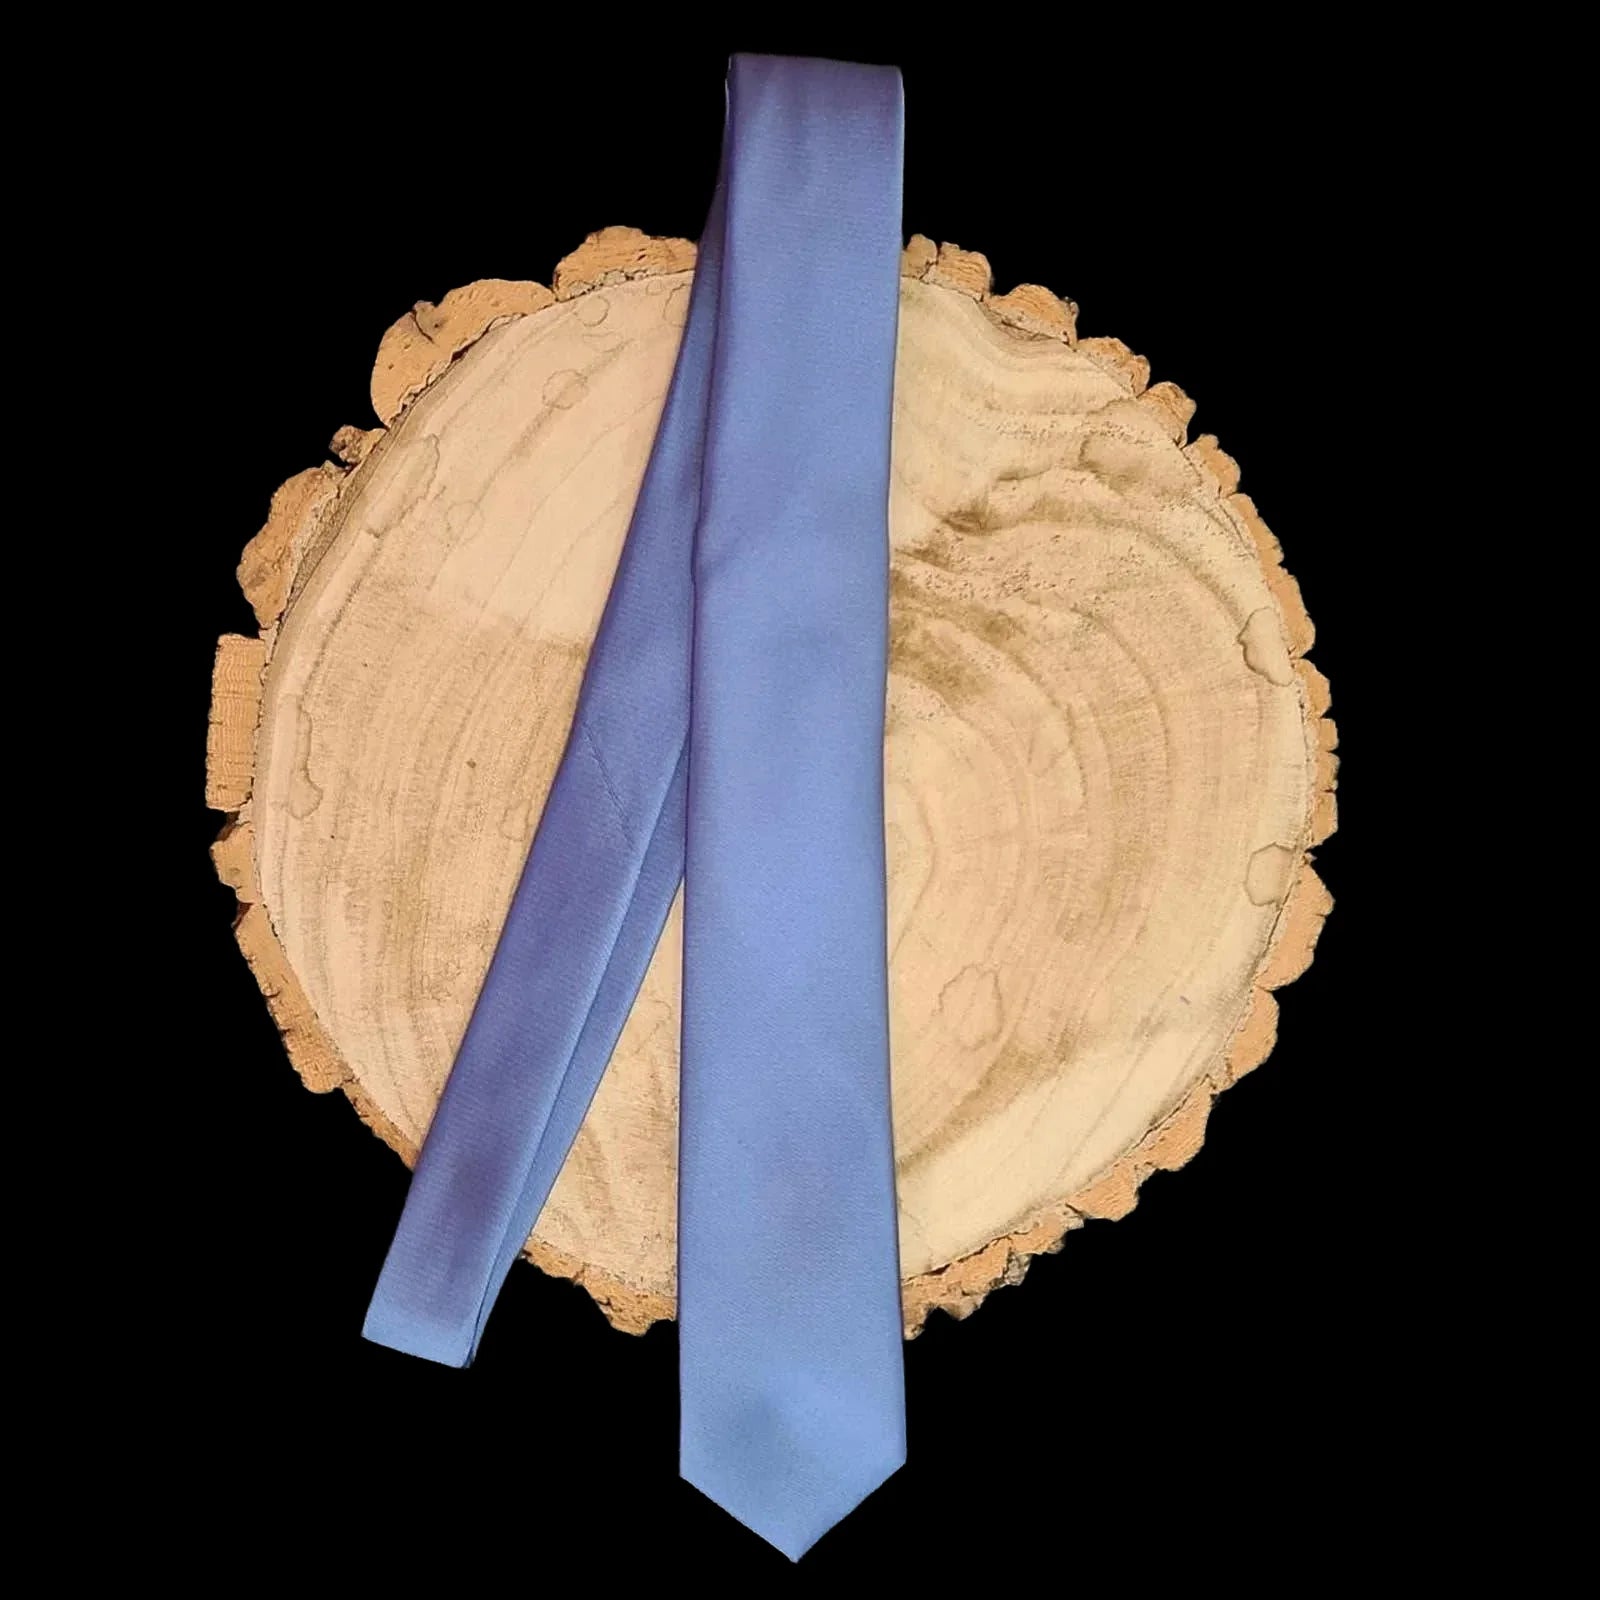 Next Blue Silk Tie - Ties - 2 - 471